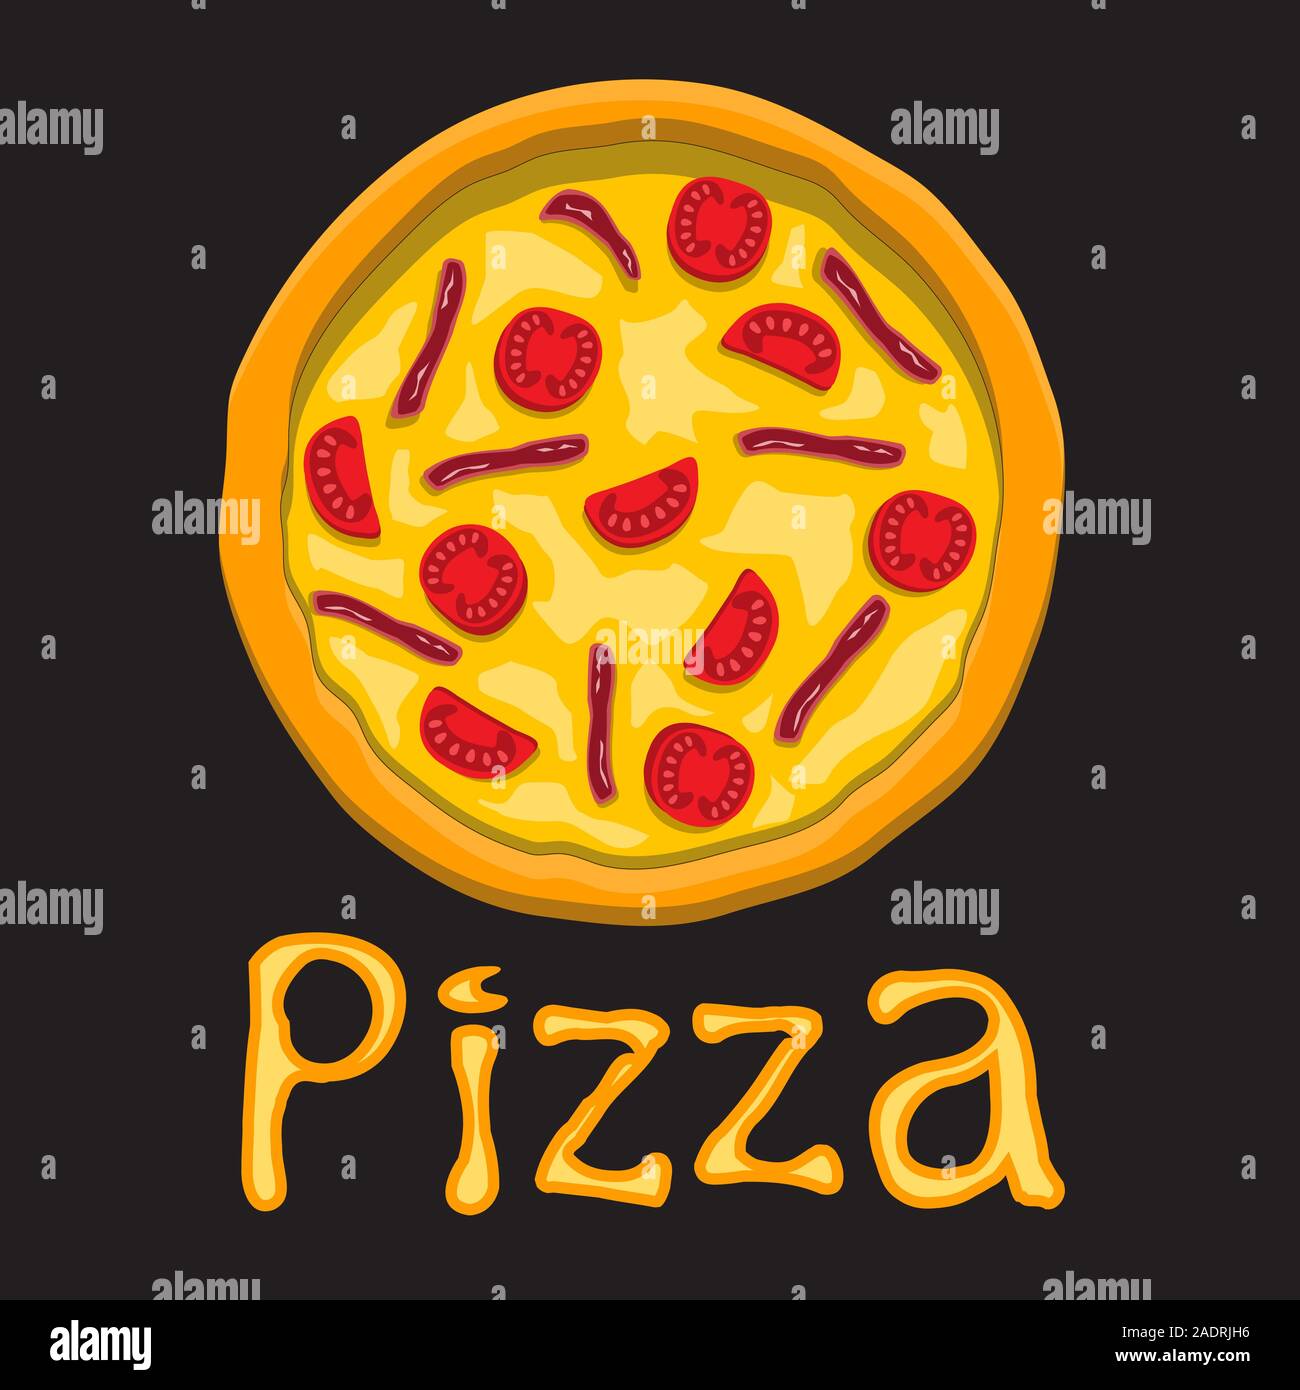 Pizza con pomodoro e pancetta lettere nere su sfondo isolato. Elemento di design oggetto. Immagine vettoriale. Illustrazione Vettoriale